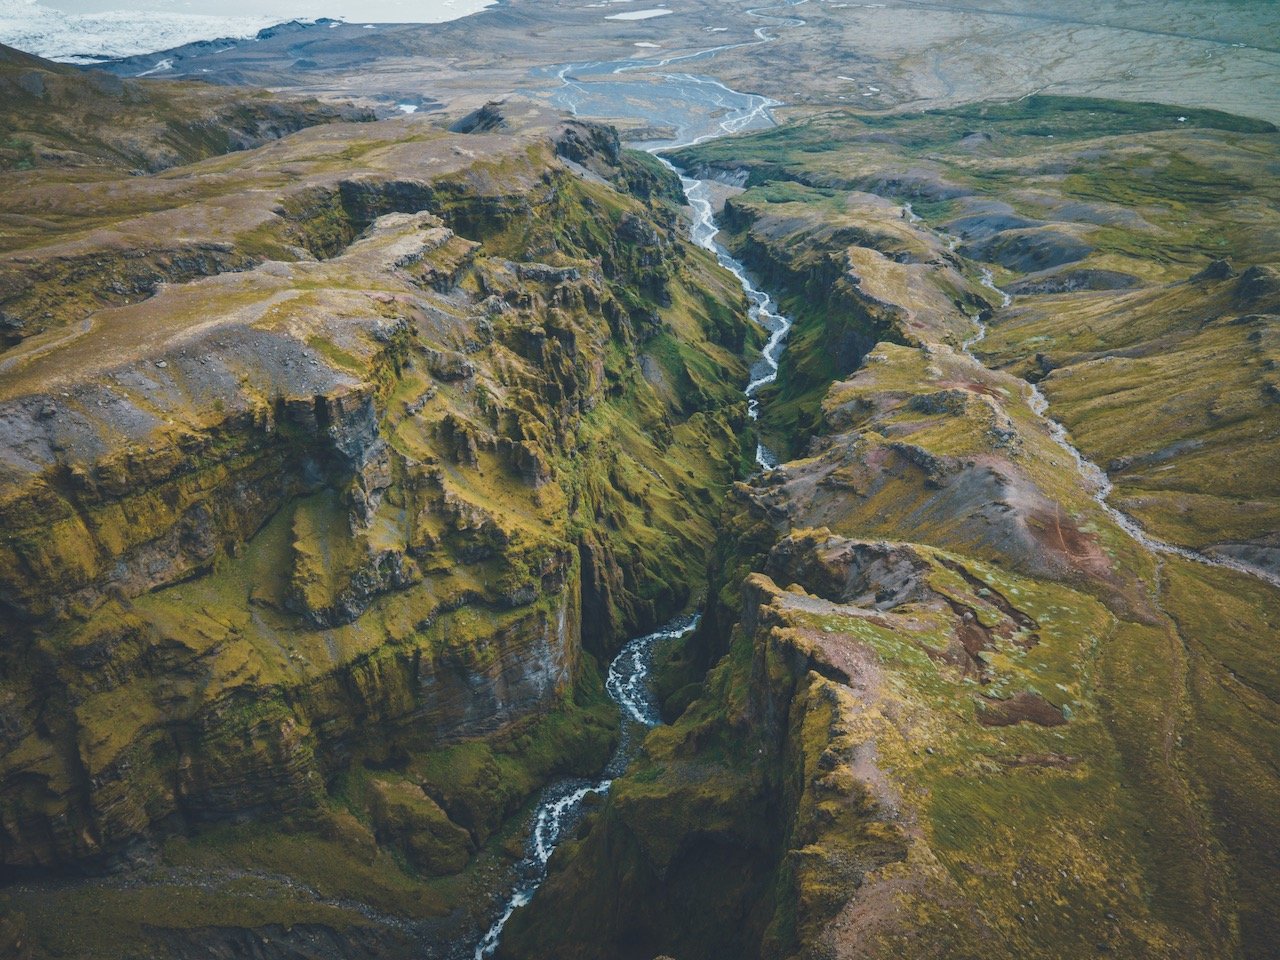   Múlagljúfur Canyon, Iceland (ISO 100, 32 mm,  f /8, 1/100 s)  